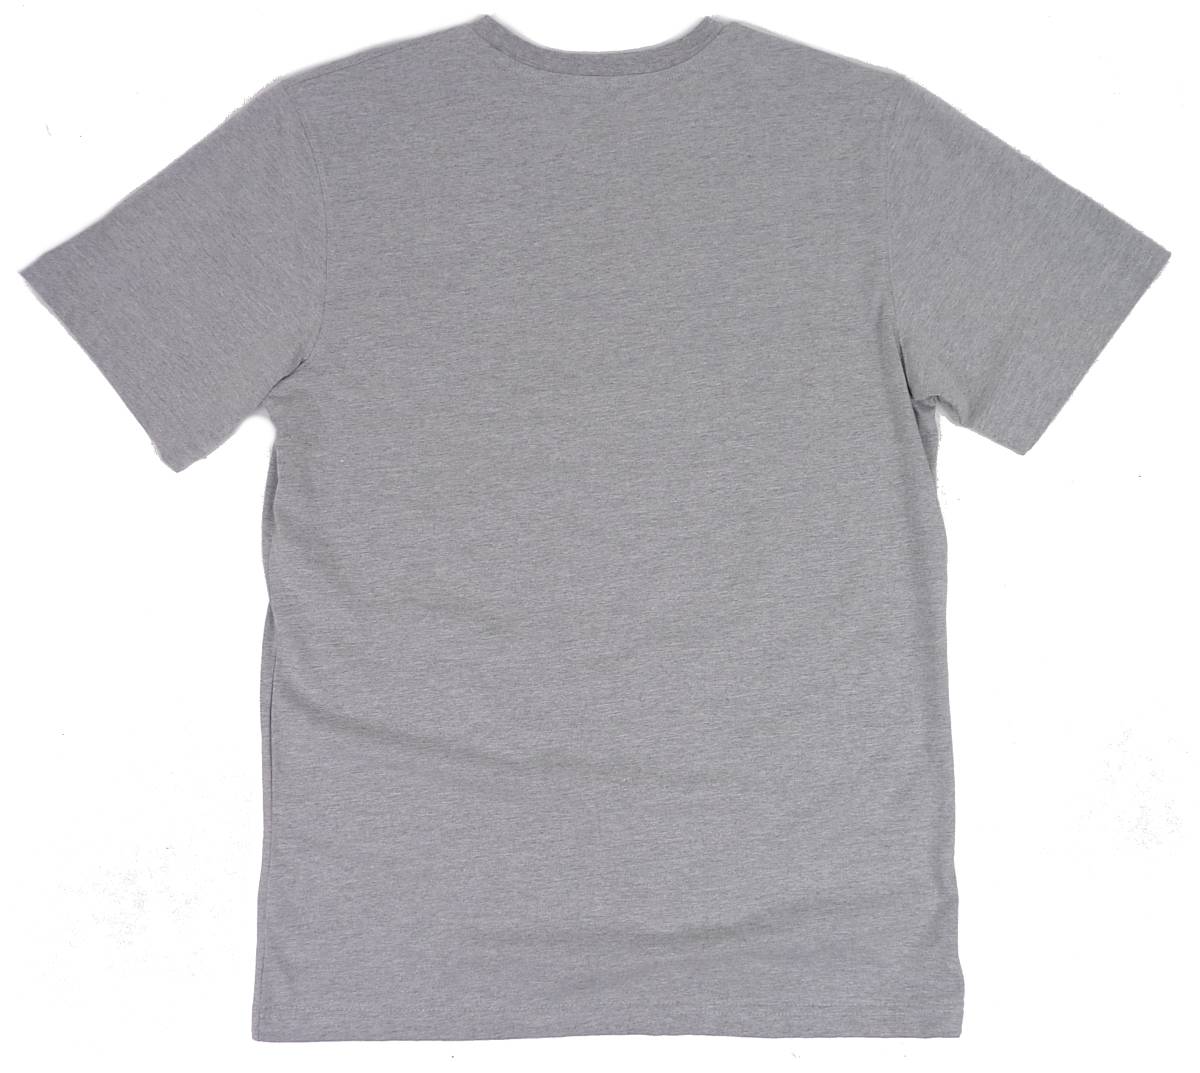 ROCA WEAR ロカウェア アフリカ ロゴ プリント クルーネック 半袖 Tシャツ グレー (XL) [並行輸入品]